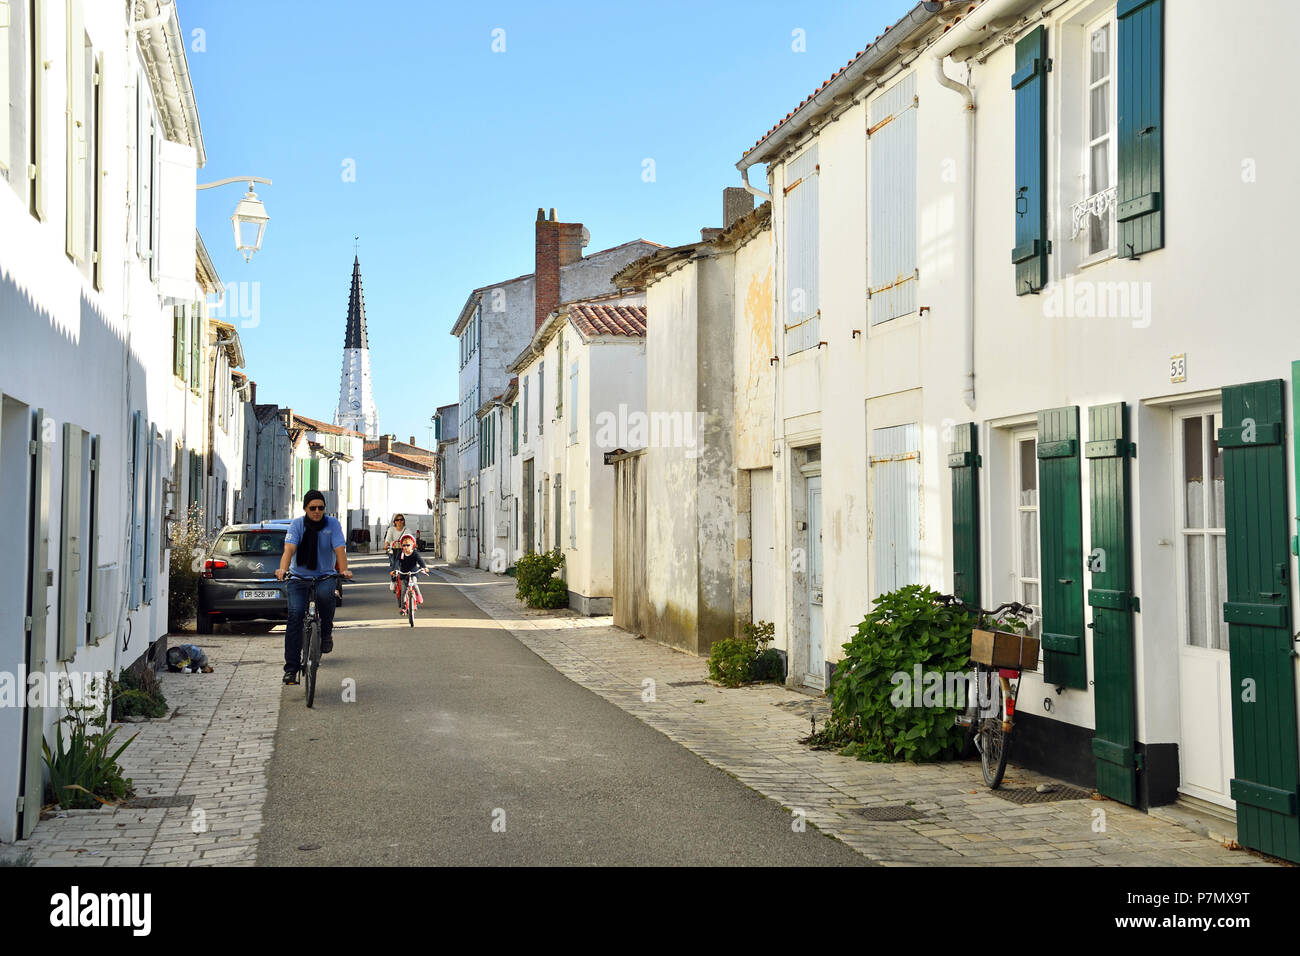 France, Charente Maritime, Ile de Re, Ars en Re, labeled Les Plus Beaux Villages de France (The most beautiful villages of France), Saint Etienne church Stock Photo